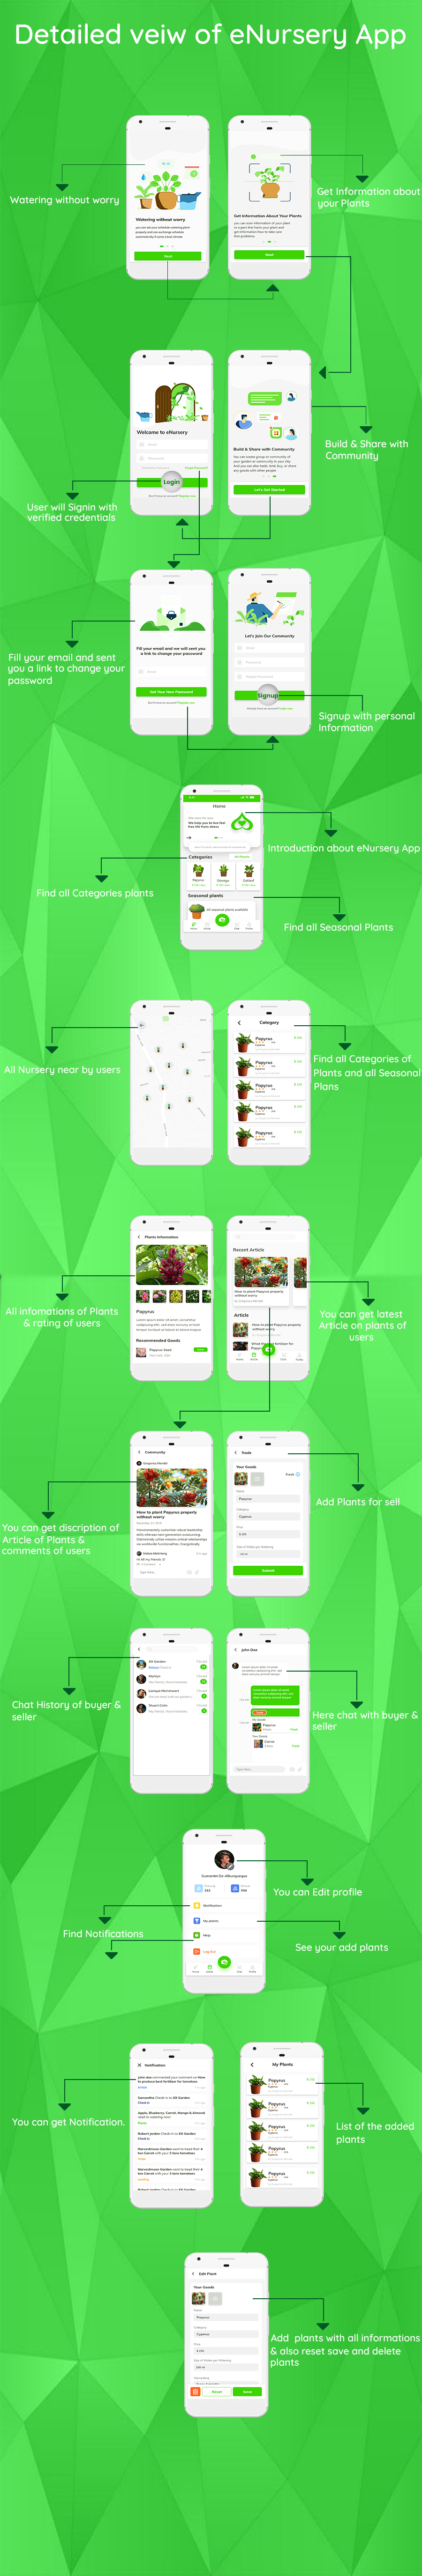 e-Nursery - Android app for Nursery - 5